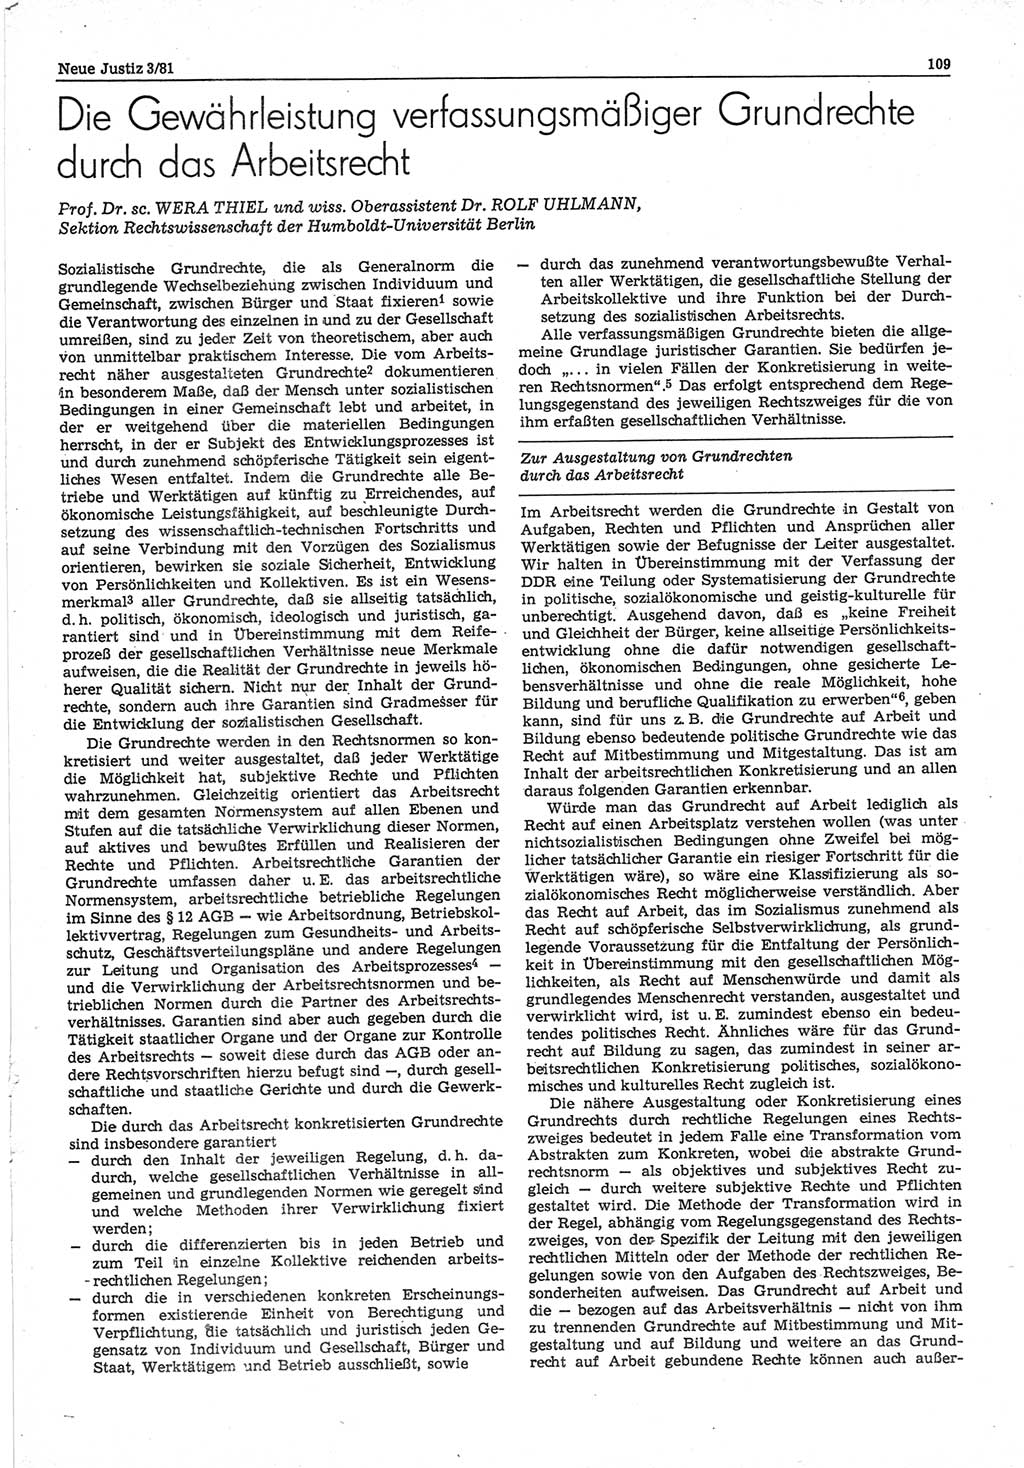 Neue Justiz (NJ), Zeitschrift für sozialistisches Recht und Gesetzlichkeit [Deutsche Demokratische Republik (DDR)], 35. Jahrgang 1981, Seite 109 (NJ DDR 1981, S. 109)